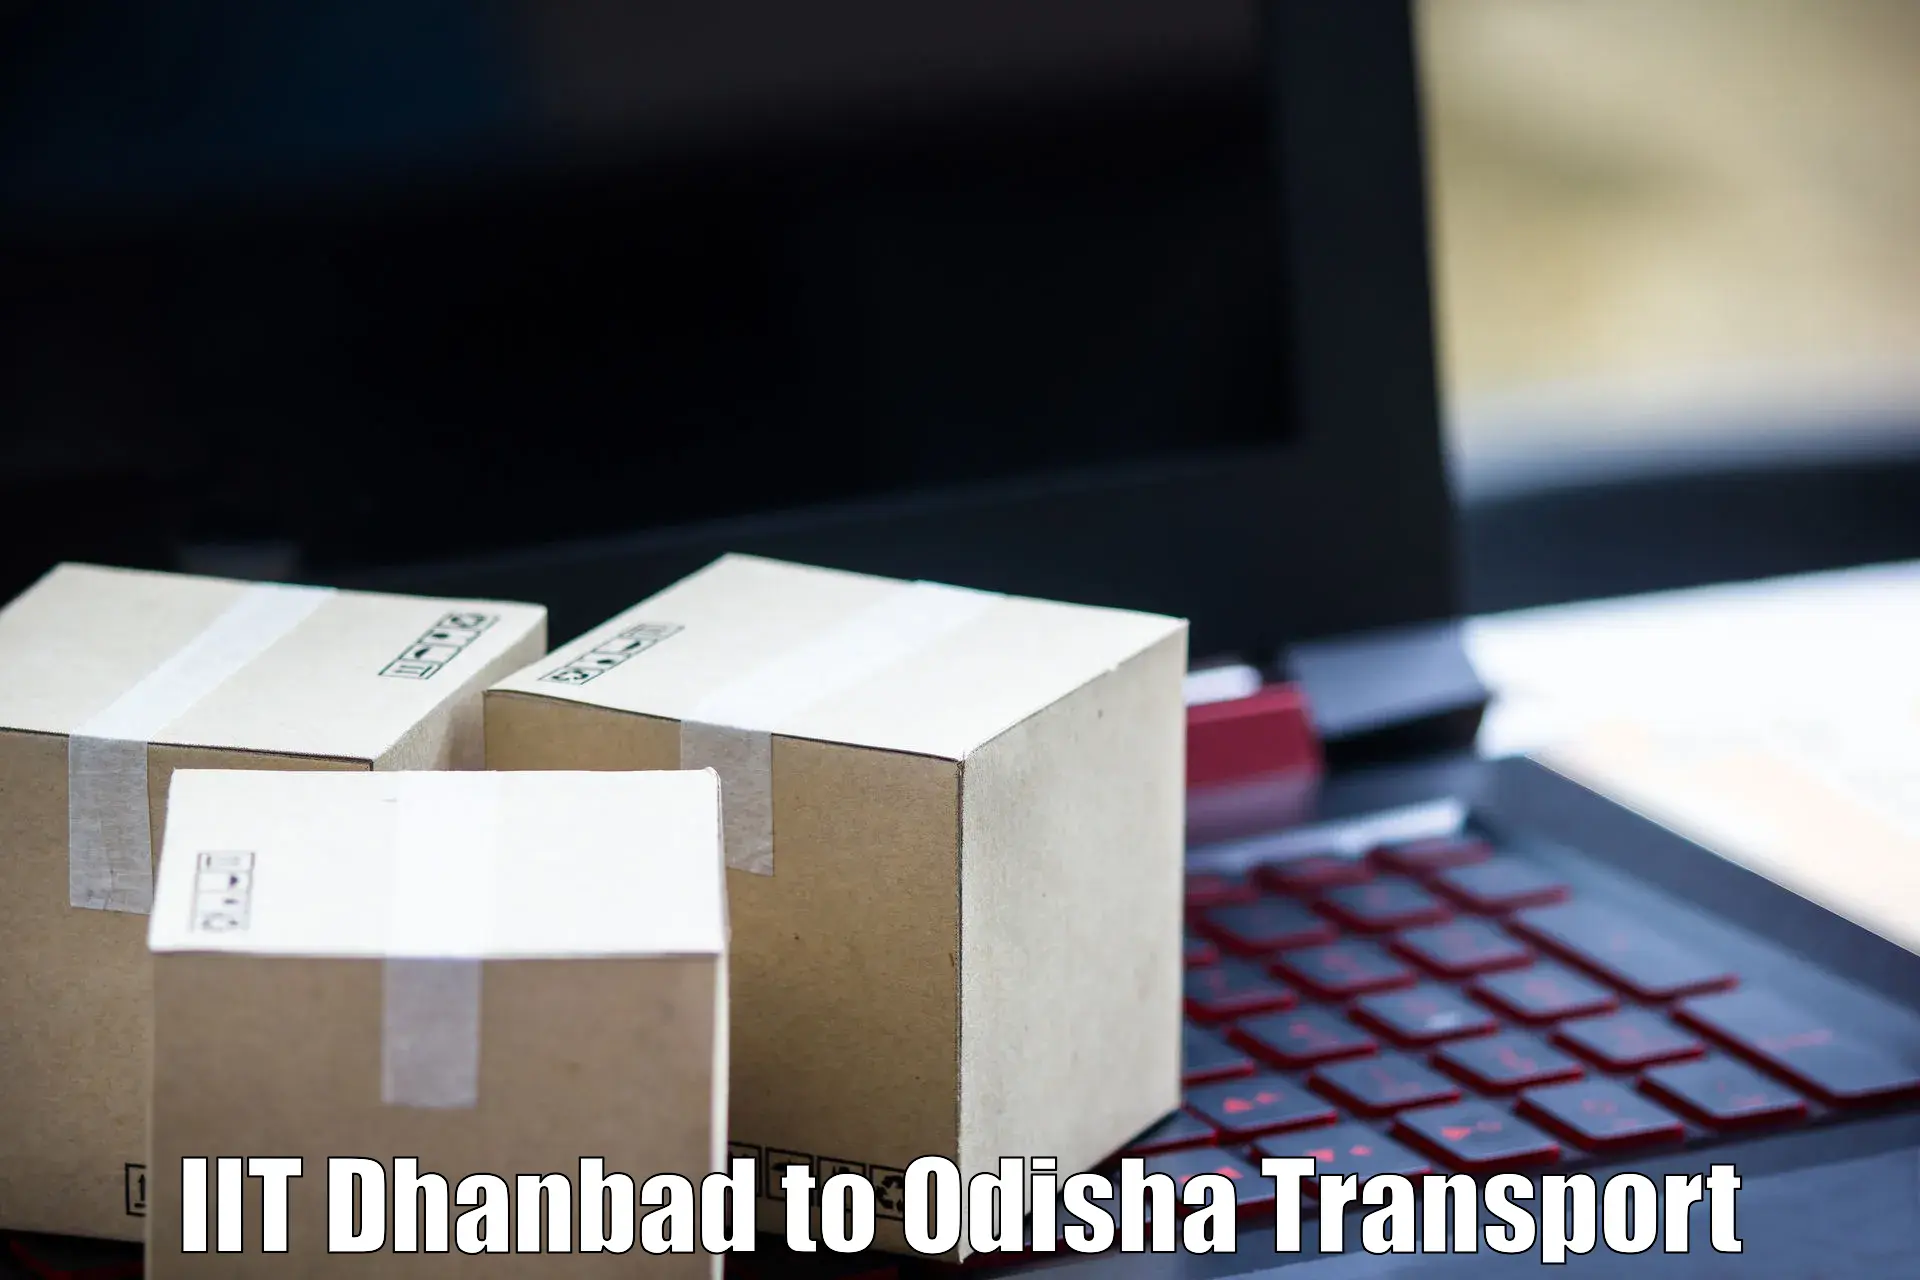 Domestic transport services IIT Dhanbad to IIT Bhubaneshwar